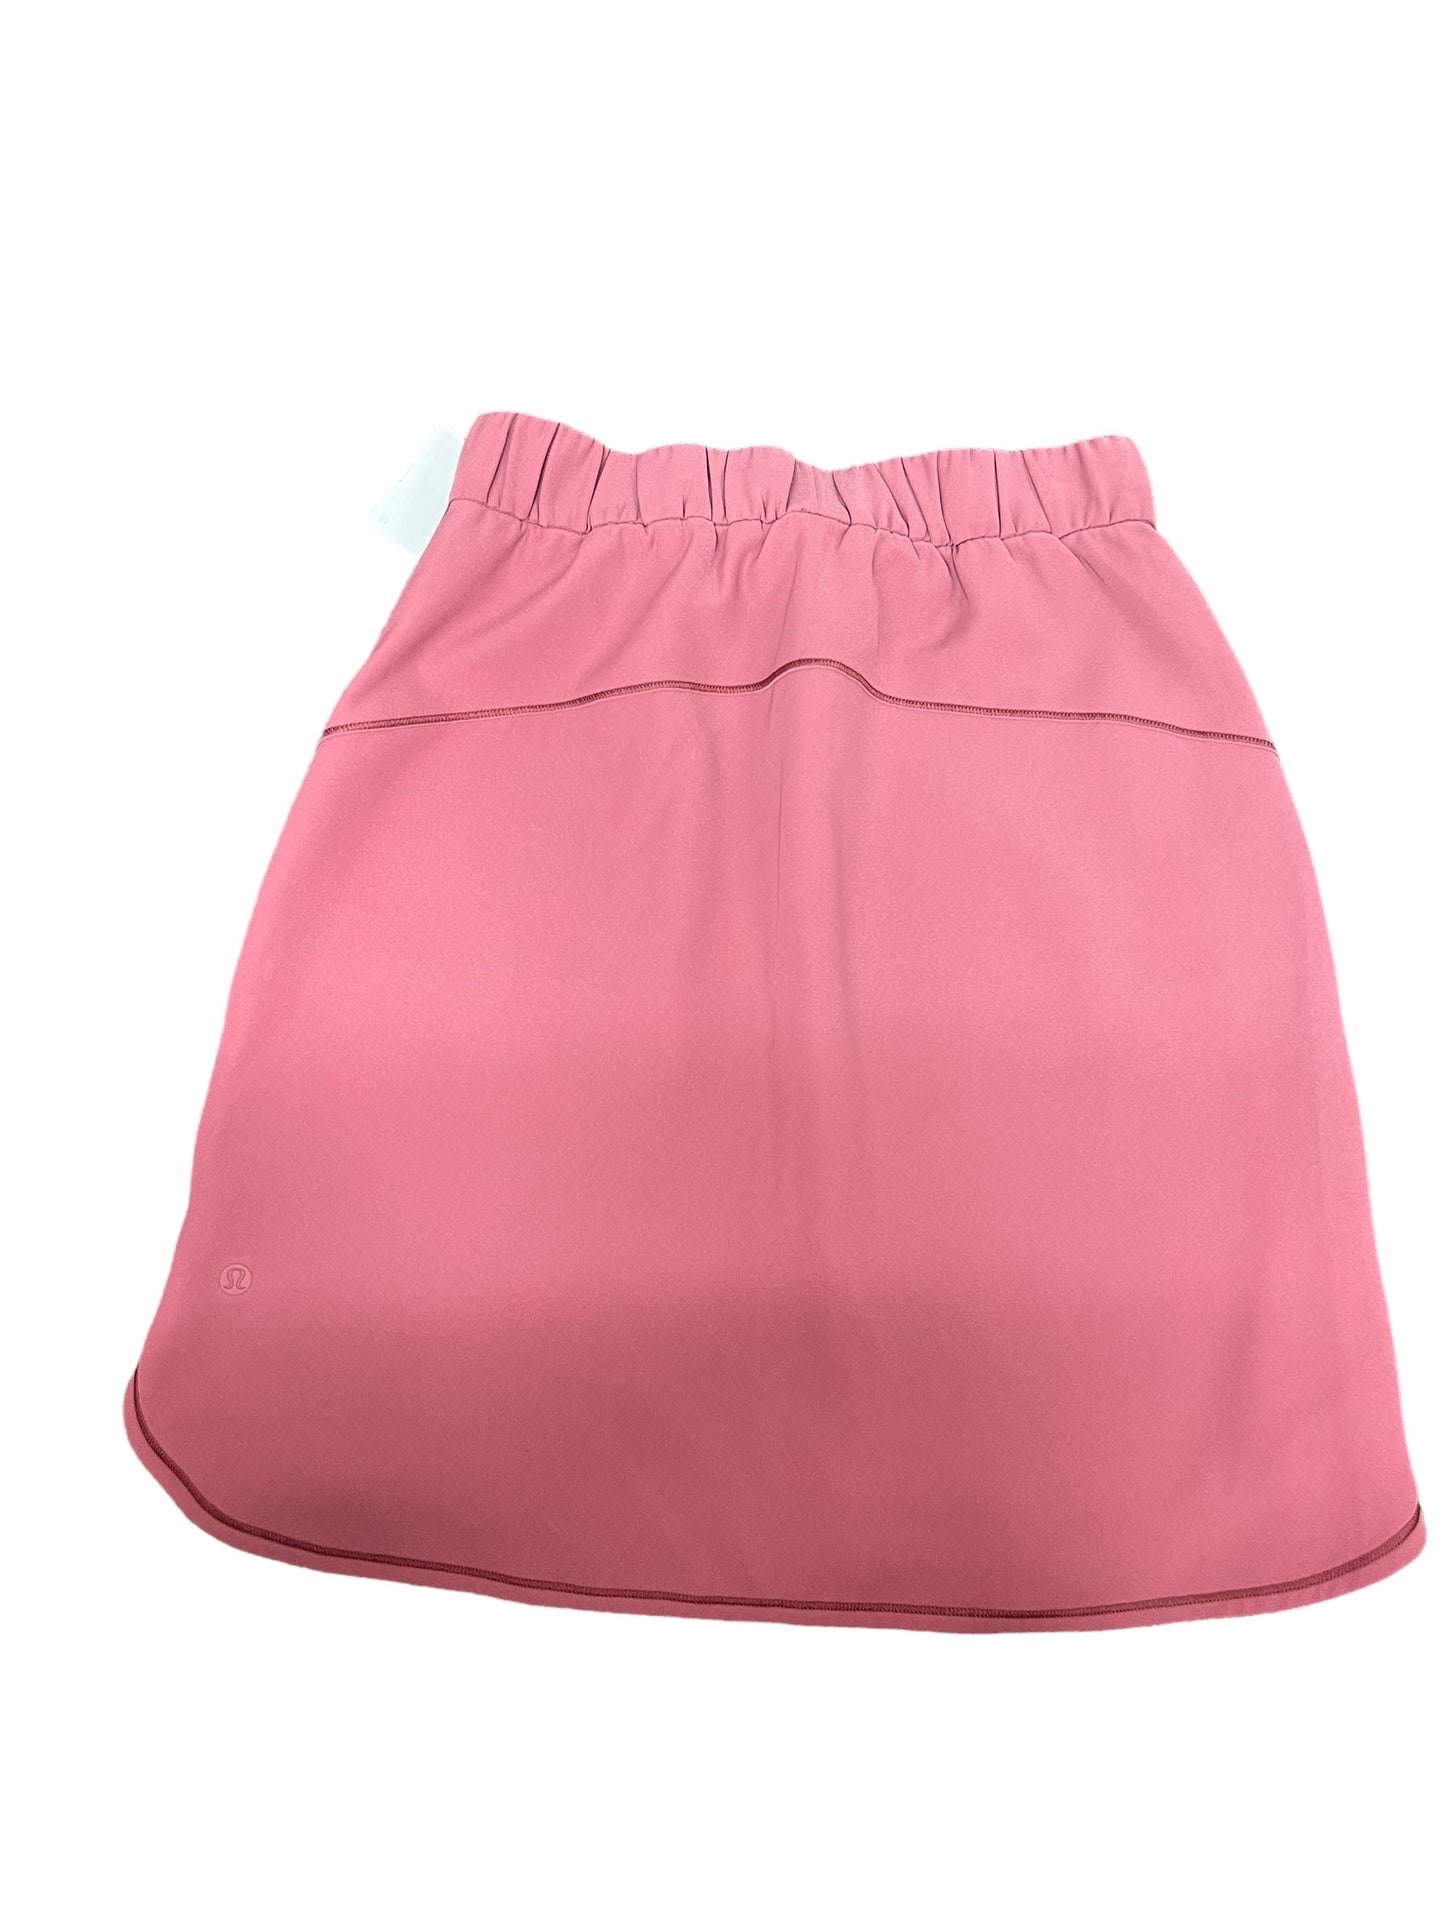 Pink Athletic Skirt Lululemon, Size 6